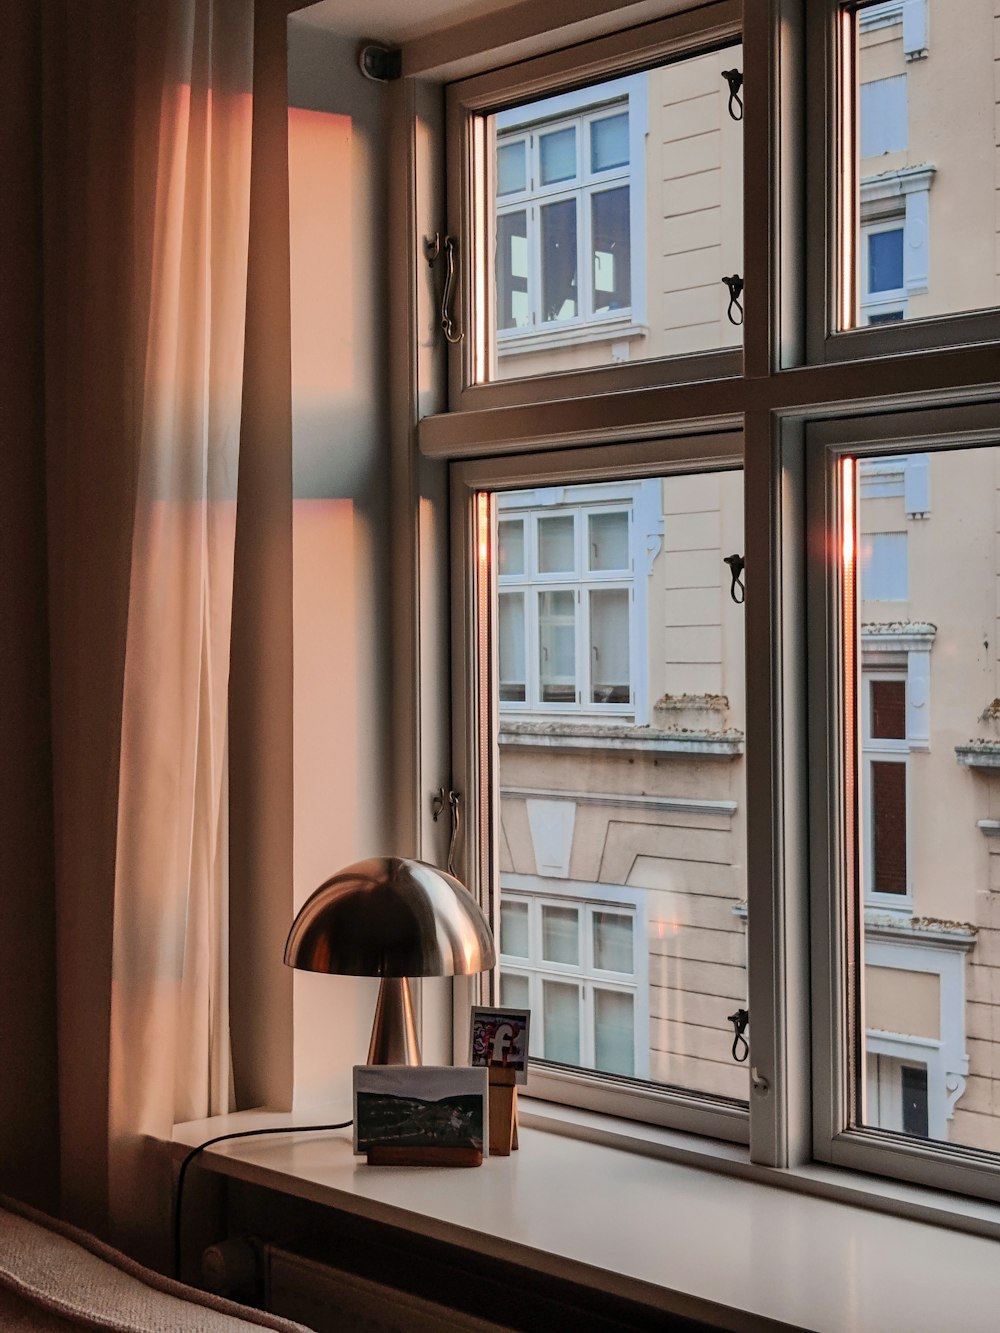 Foto zum Thema Eine lampe, die auf einem fensterbrett neben einem fenster  sitzt – Kostenloses Bild zu Fenster auf Unsplash